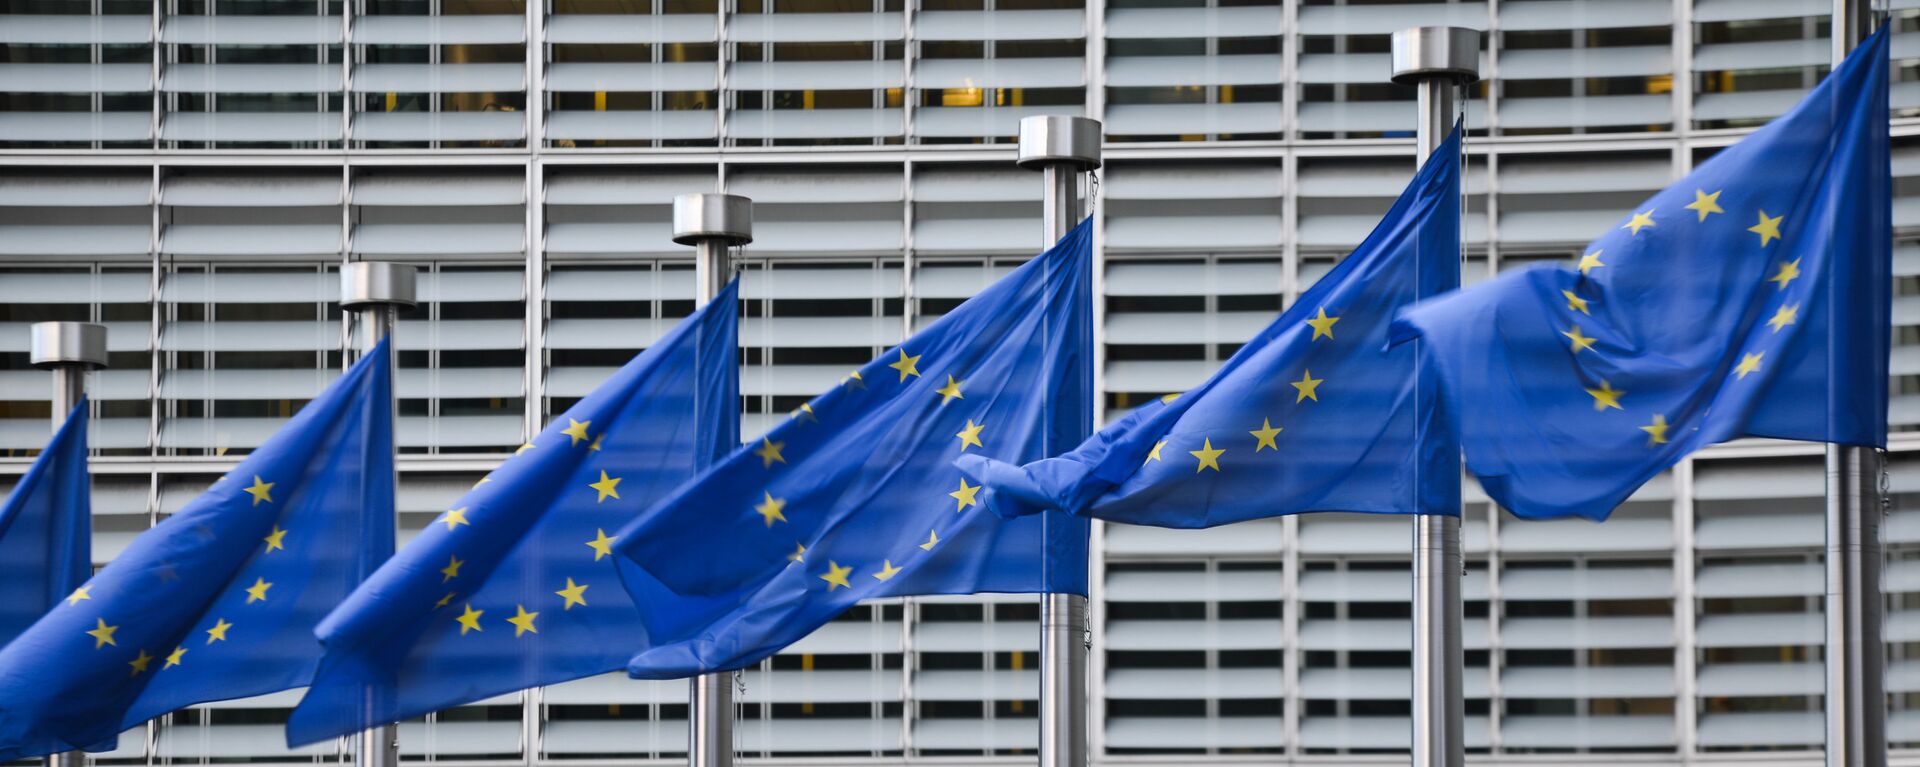 Флаги Евросоюза у здания штаб-квартиры Европейской комиссии в Брюсселе - Sputnik Узбекистан, 1920, 01.12.2020